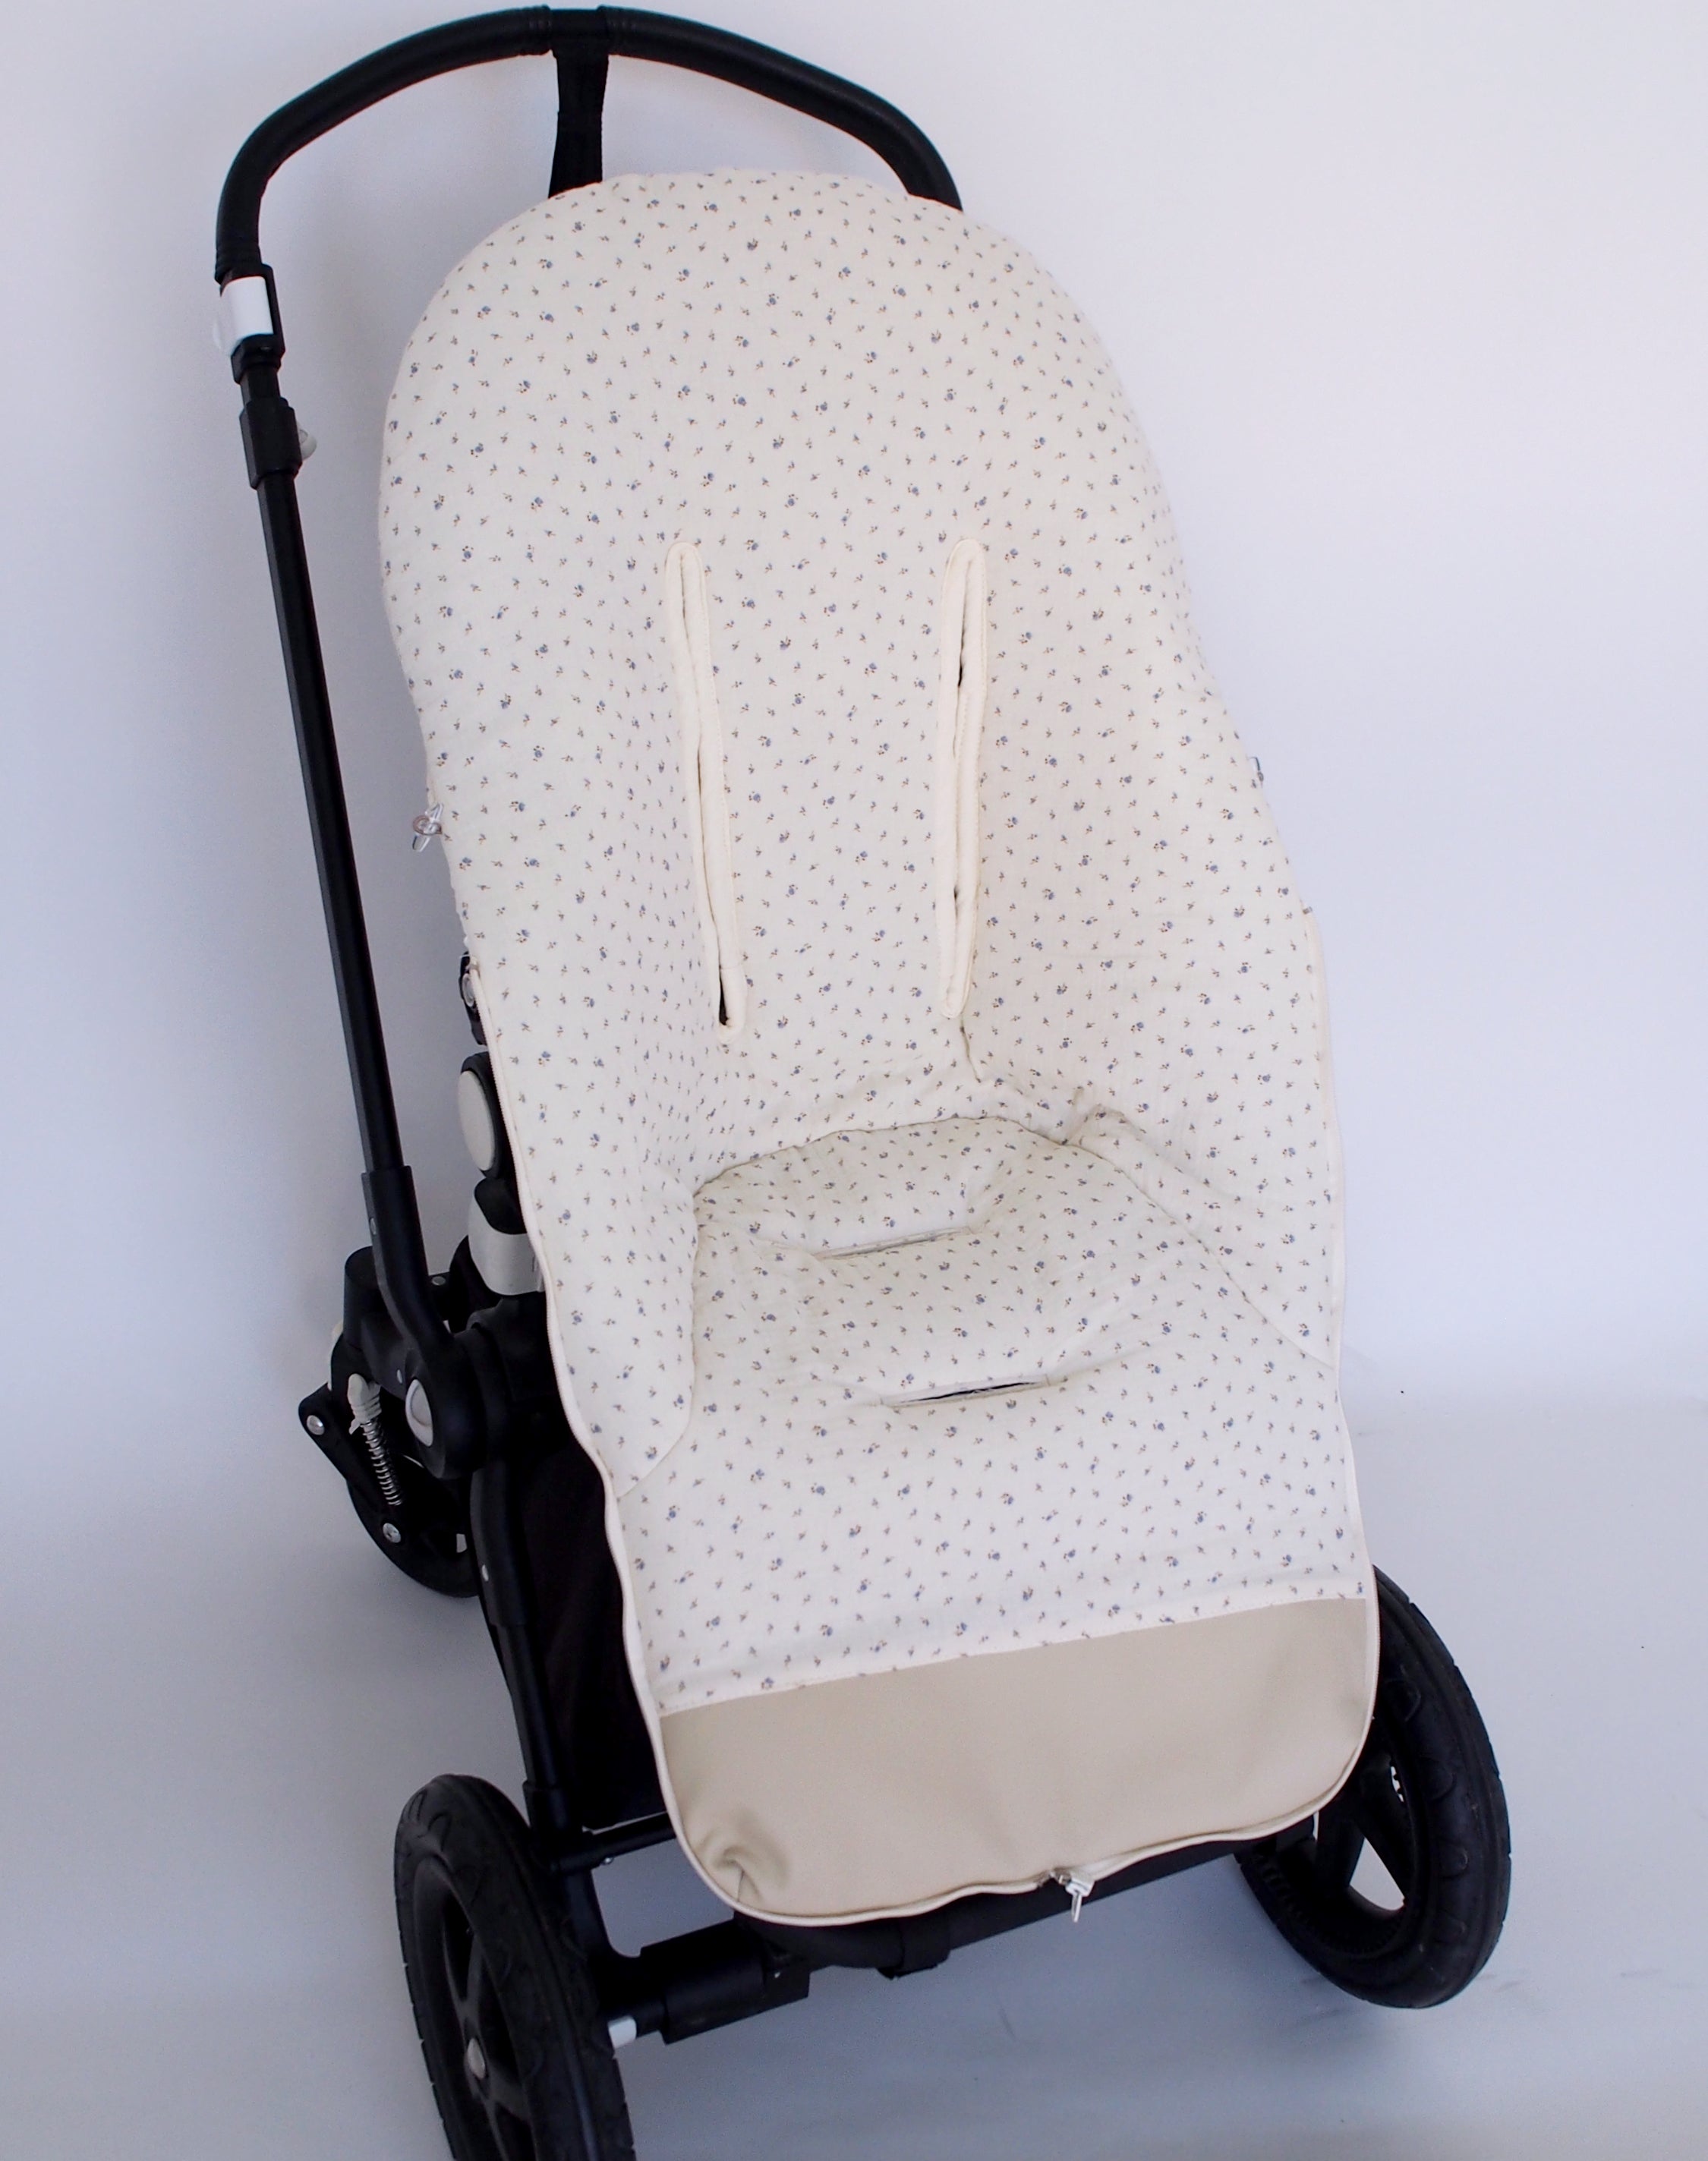 Saco silla paseo invierno Chispas Gris Pelo Gris [saco-paseo-invierno-chispas-gris]  - 110,00€ : Sacos silla paseo, Fundas para silla bebe